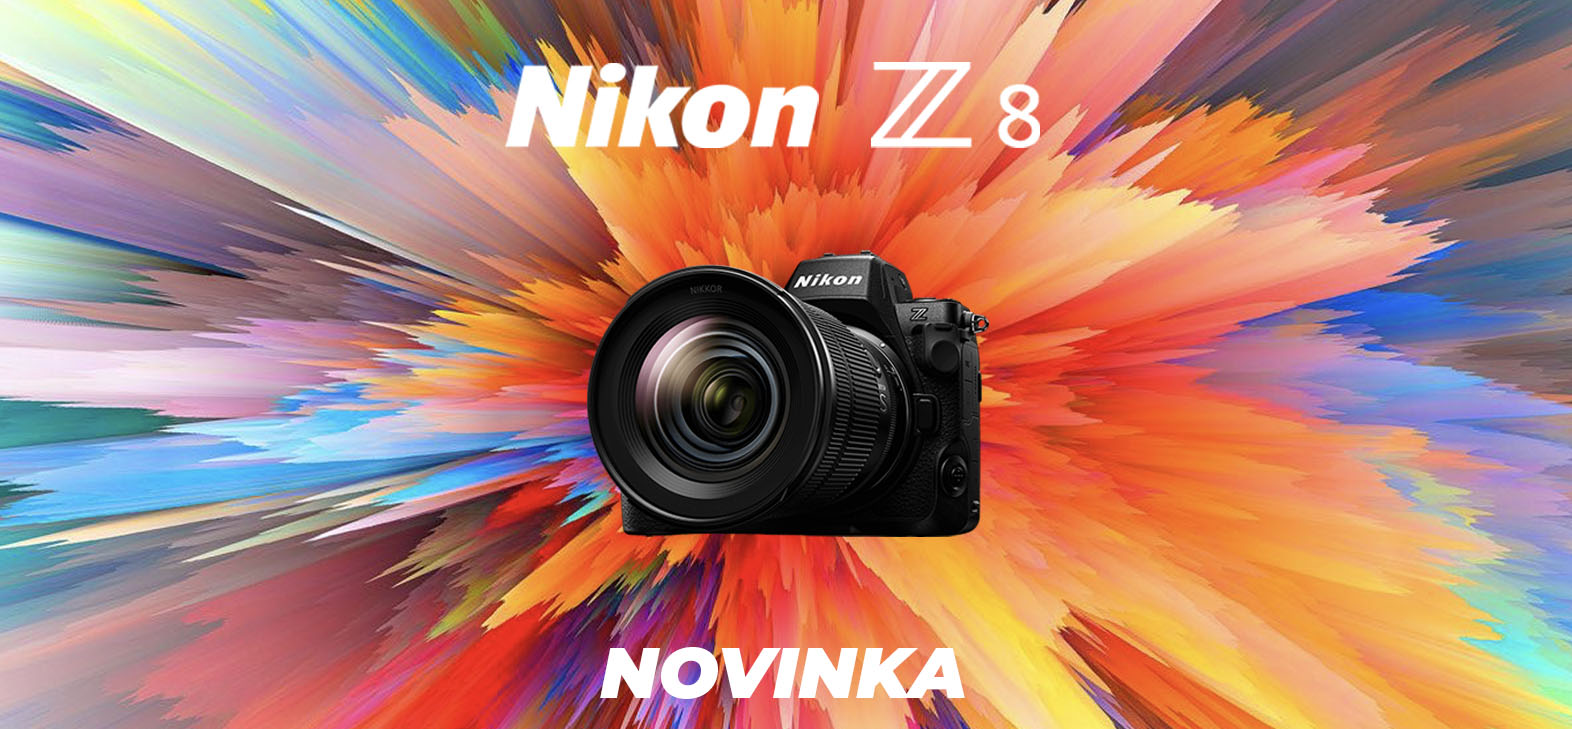 NOVINKA - Nikon Z8